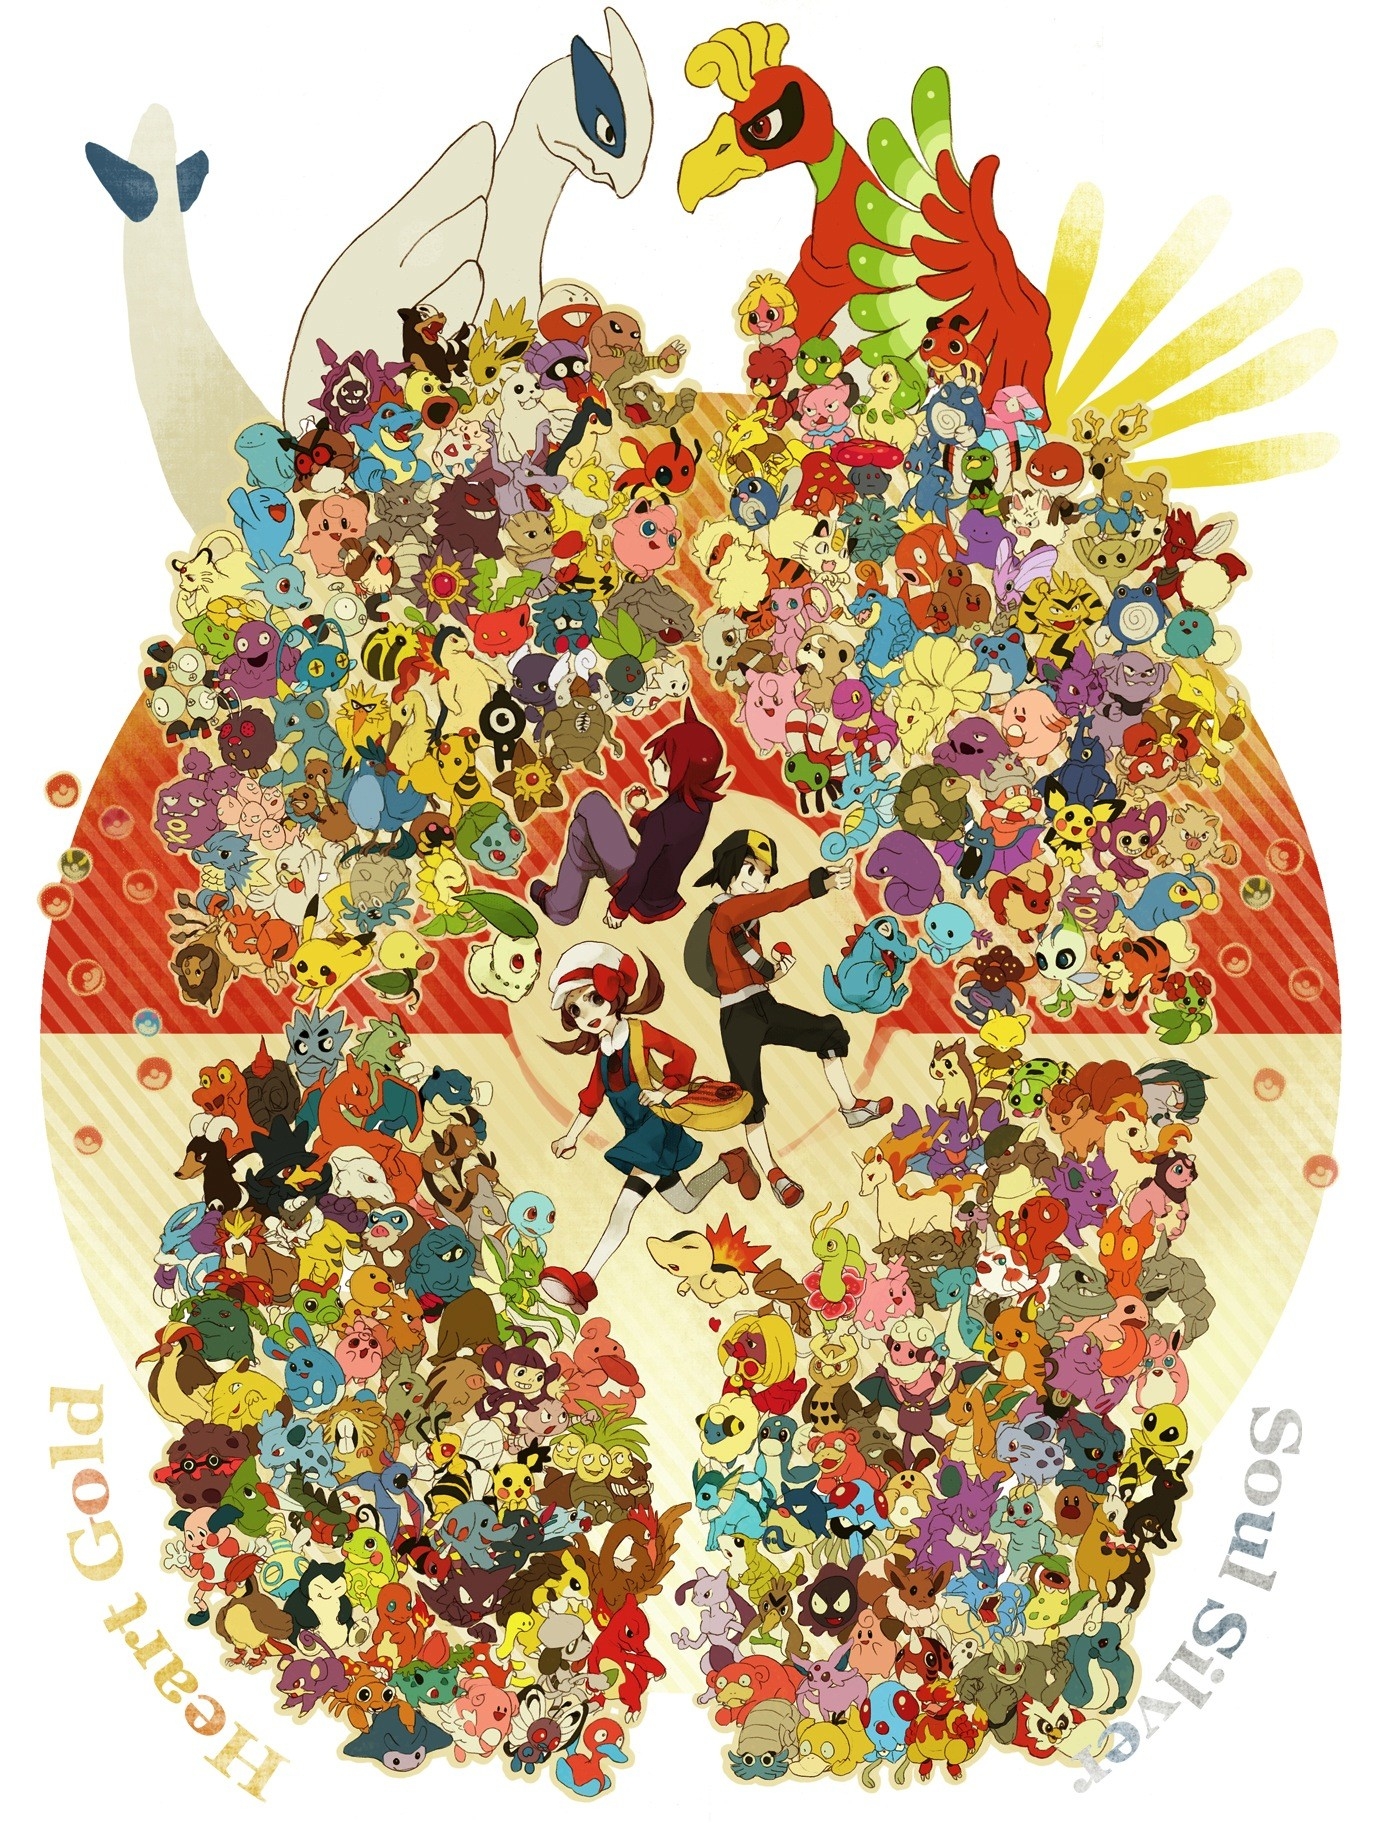 Pokémon - HD Wallpaper 